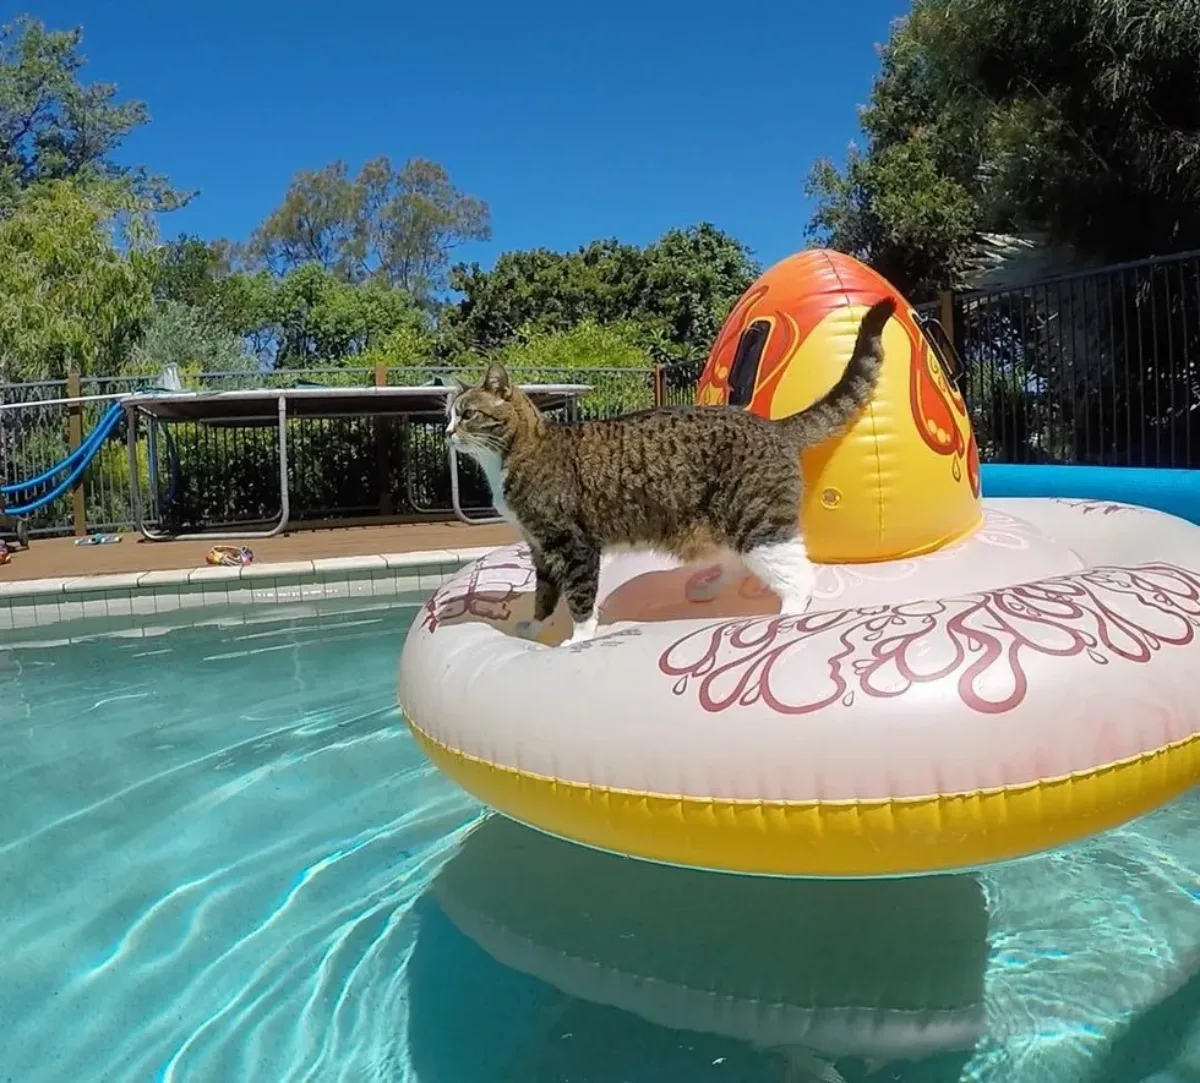 comment assurer la securite de votre chat autour d une piscine